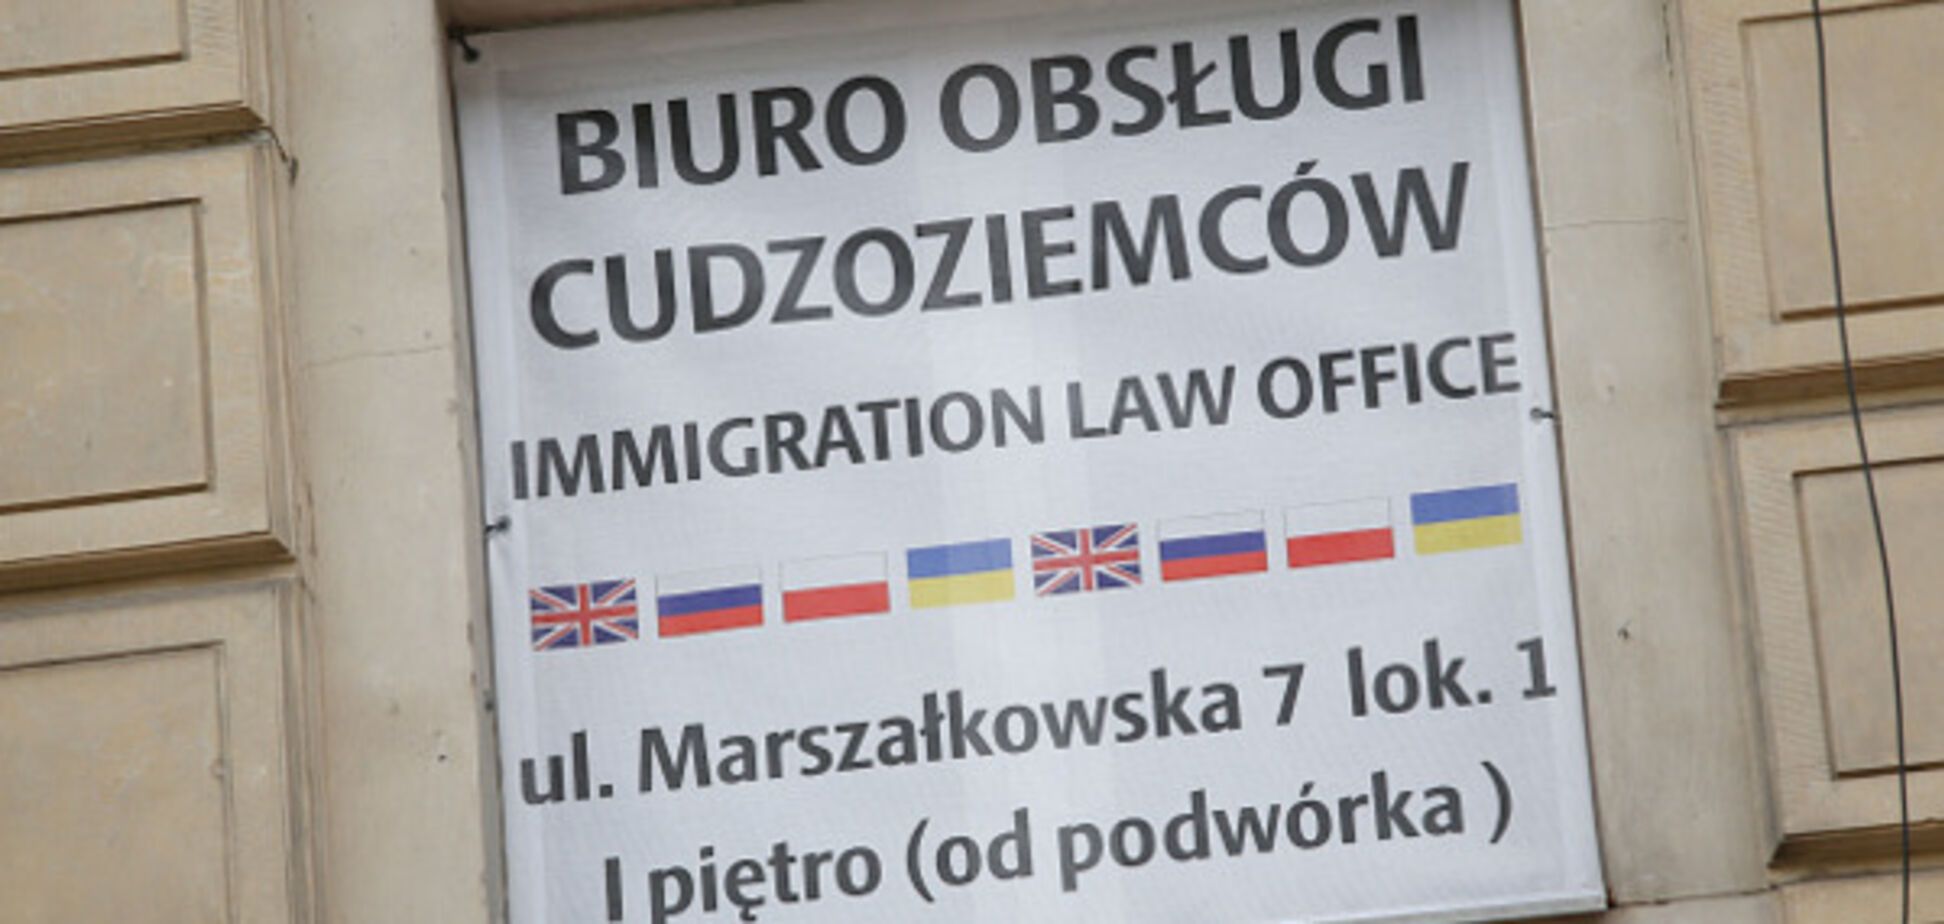 Як живеться українцям у Польщі: розповіді емігрантів